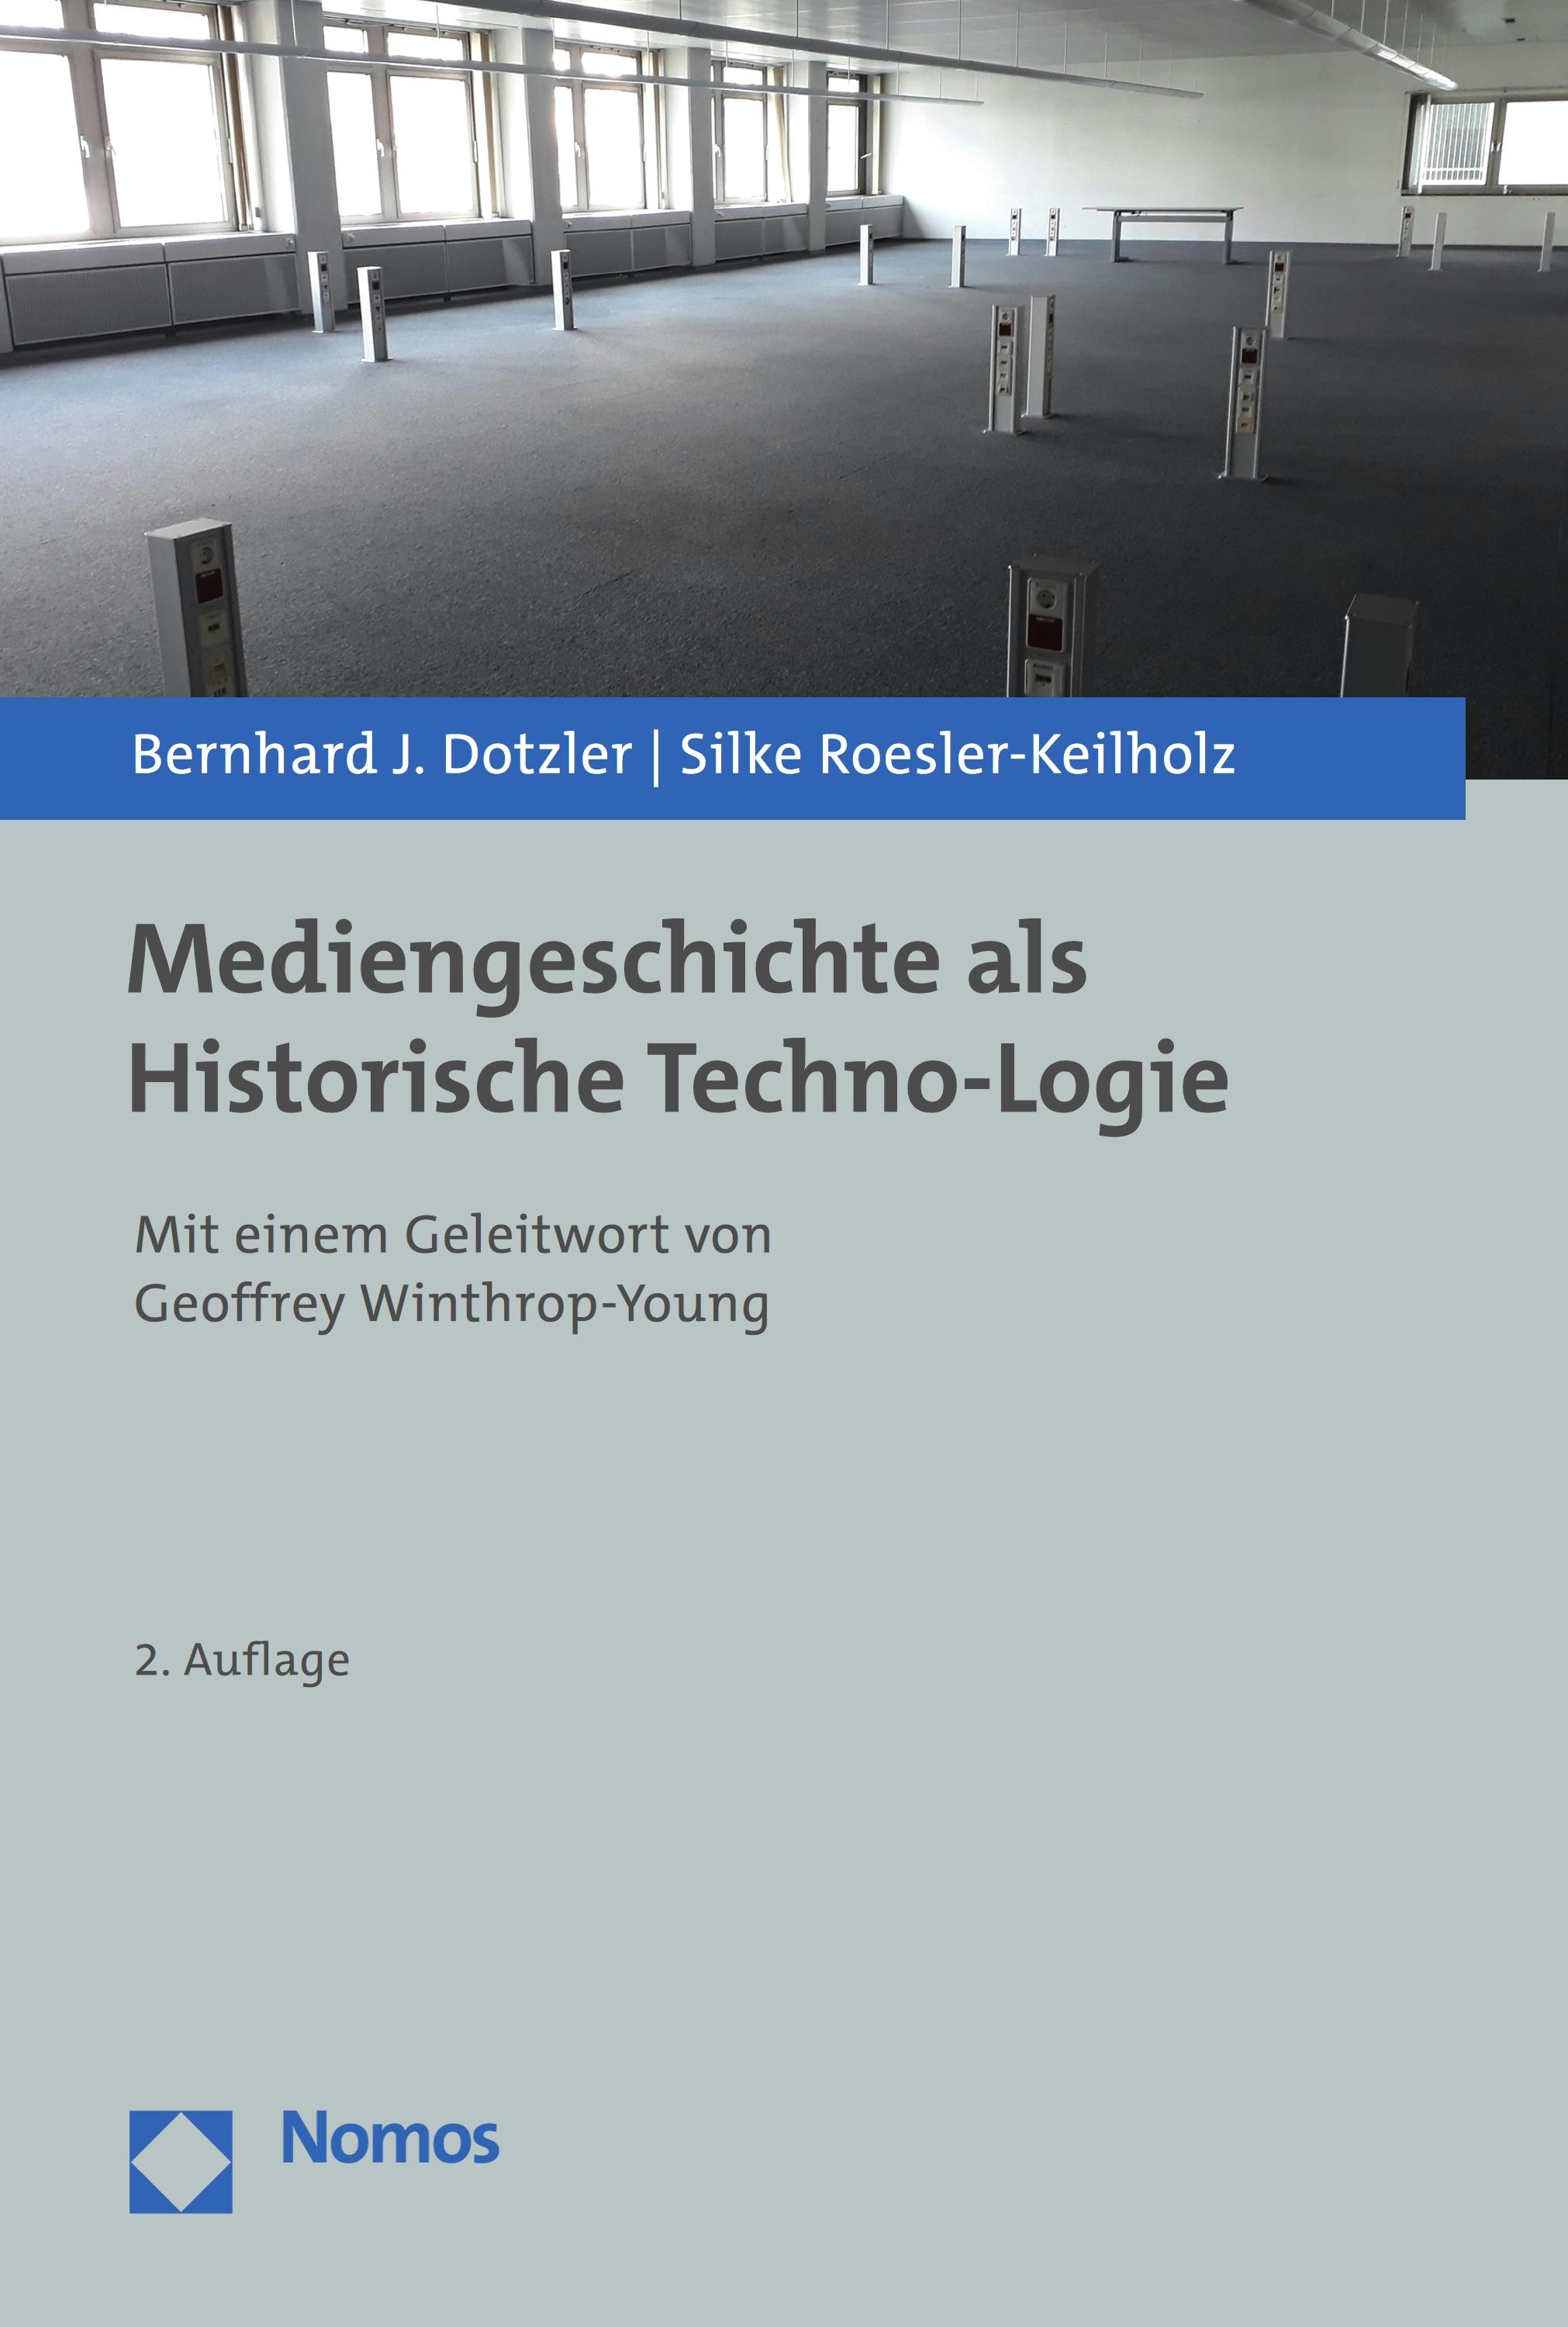 Mediengeschichte als Historische Techno-Logie: Mit einem Geleitwort von Geoffrey Winthrop-Young - Bernhard J. Dotzler, Silke Roesler-Keilholz